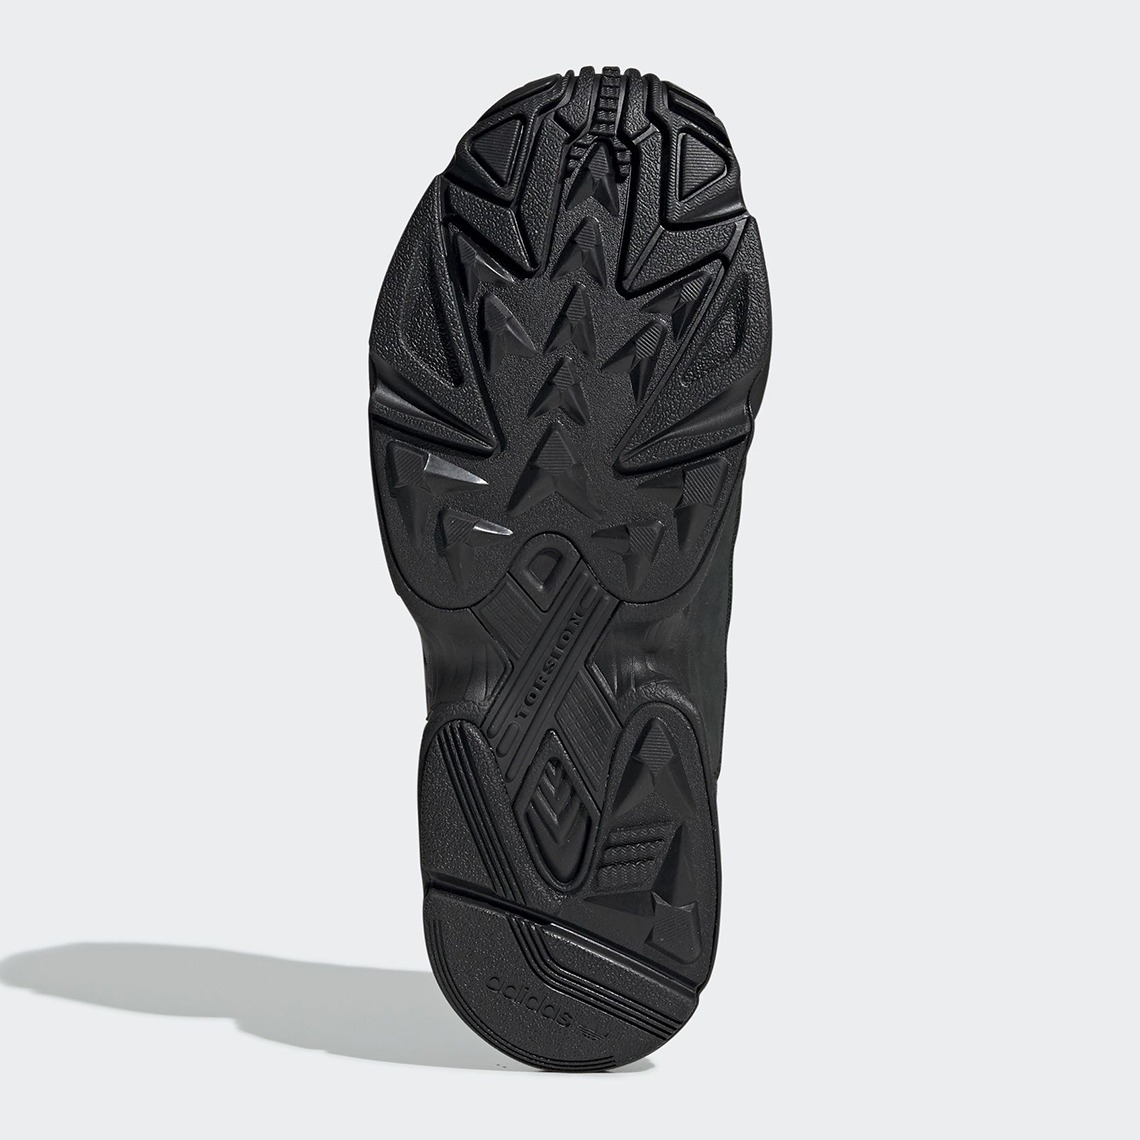 Adidas Yung-1 Reinvigorates Dad Shoe Wave With Black & Neon Colorway